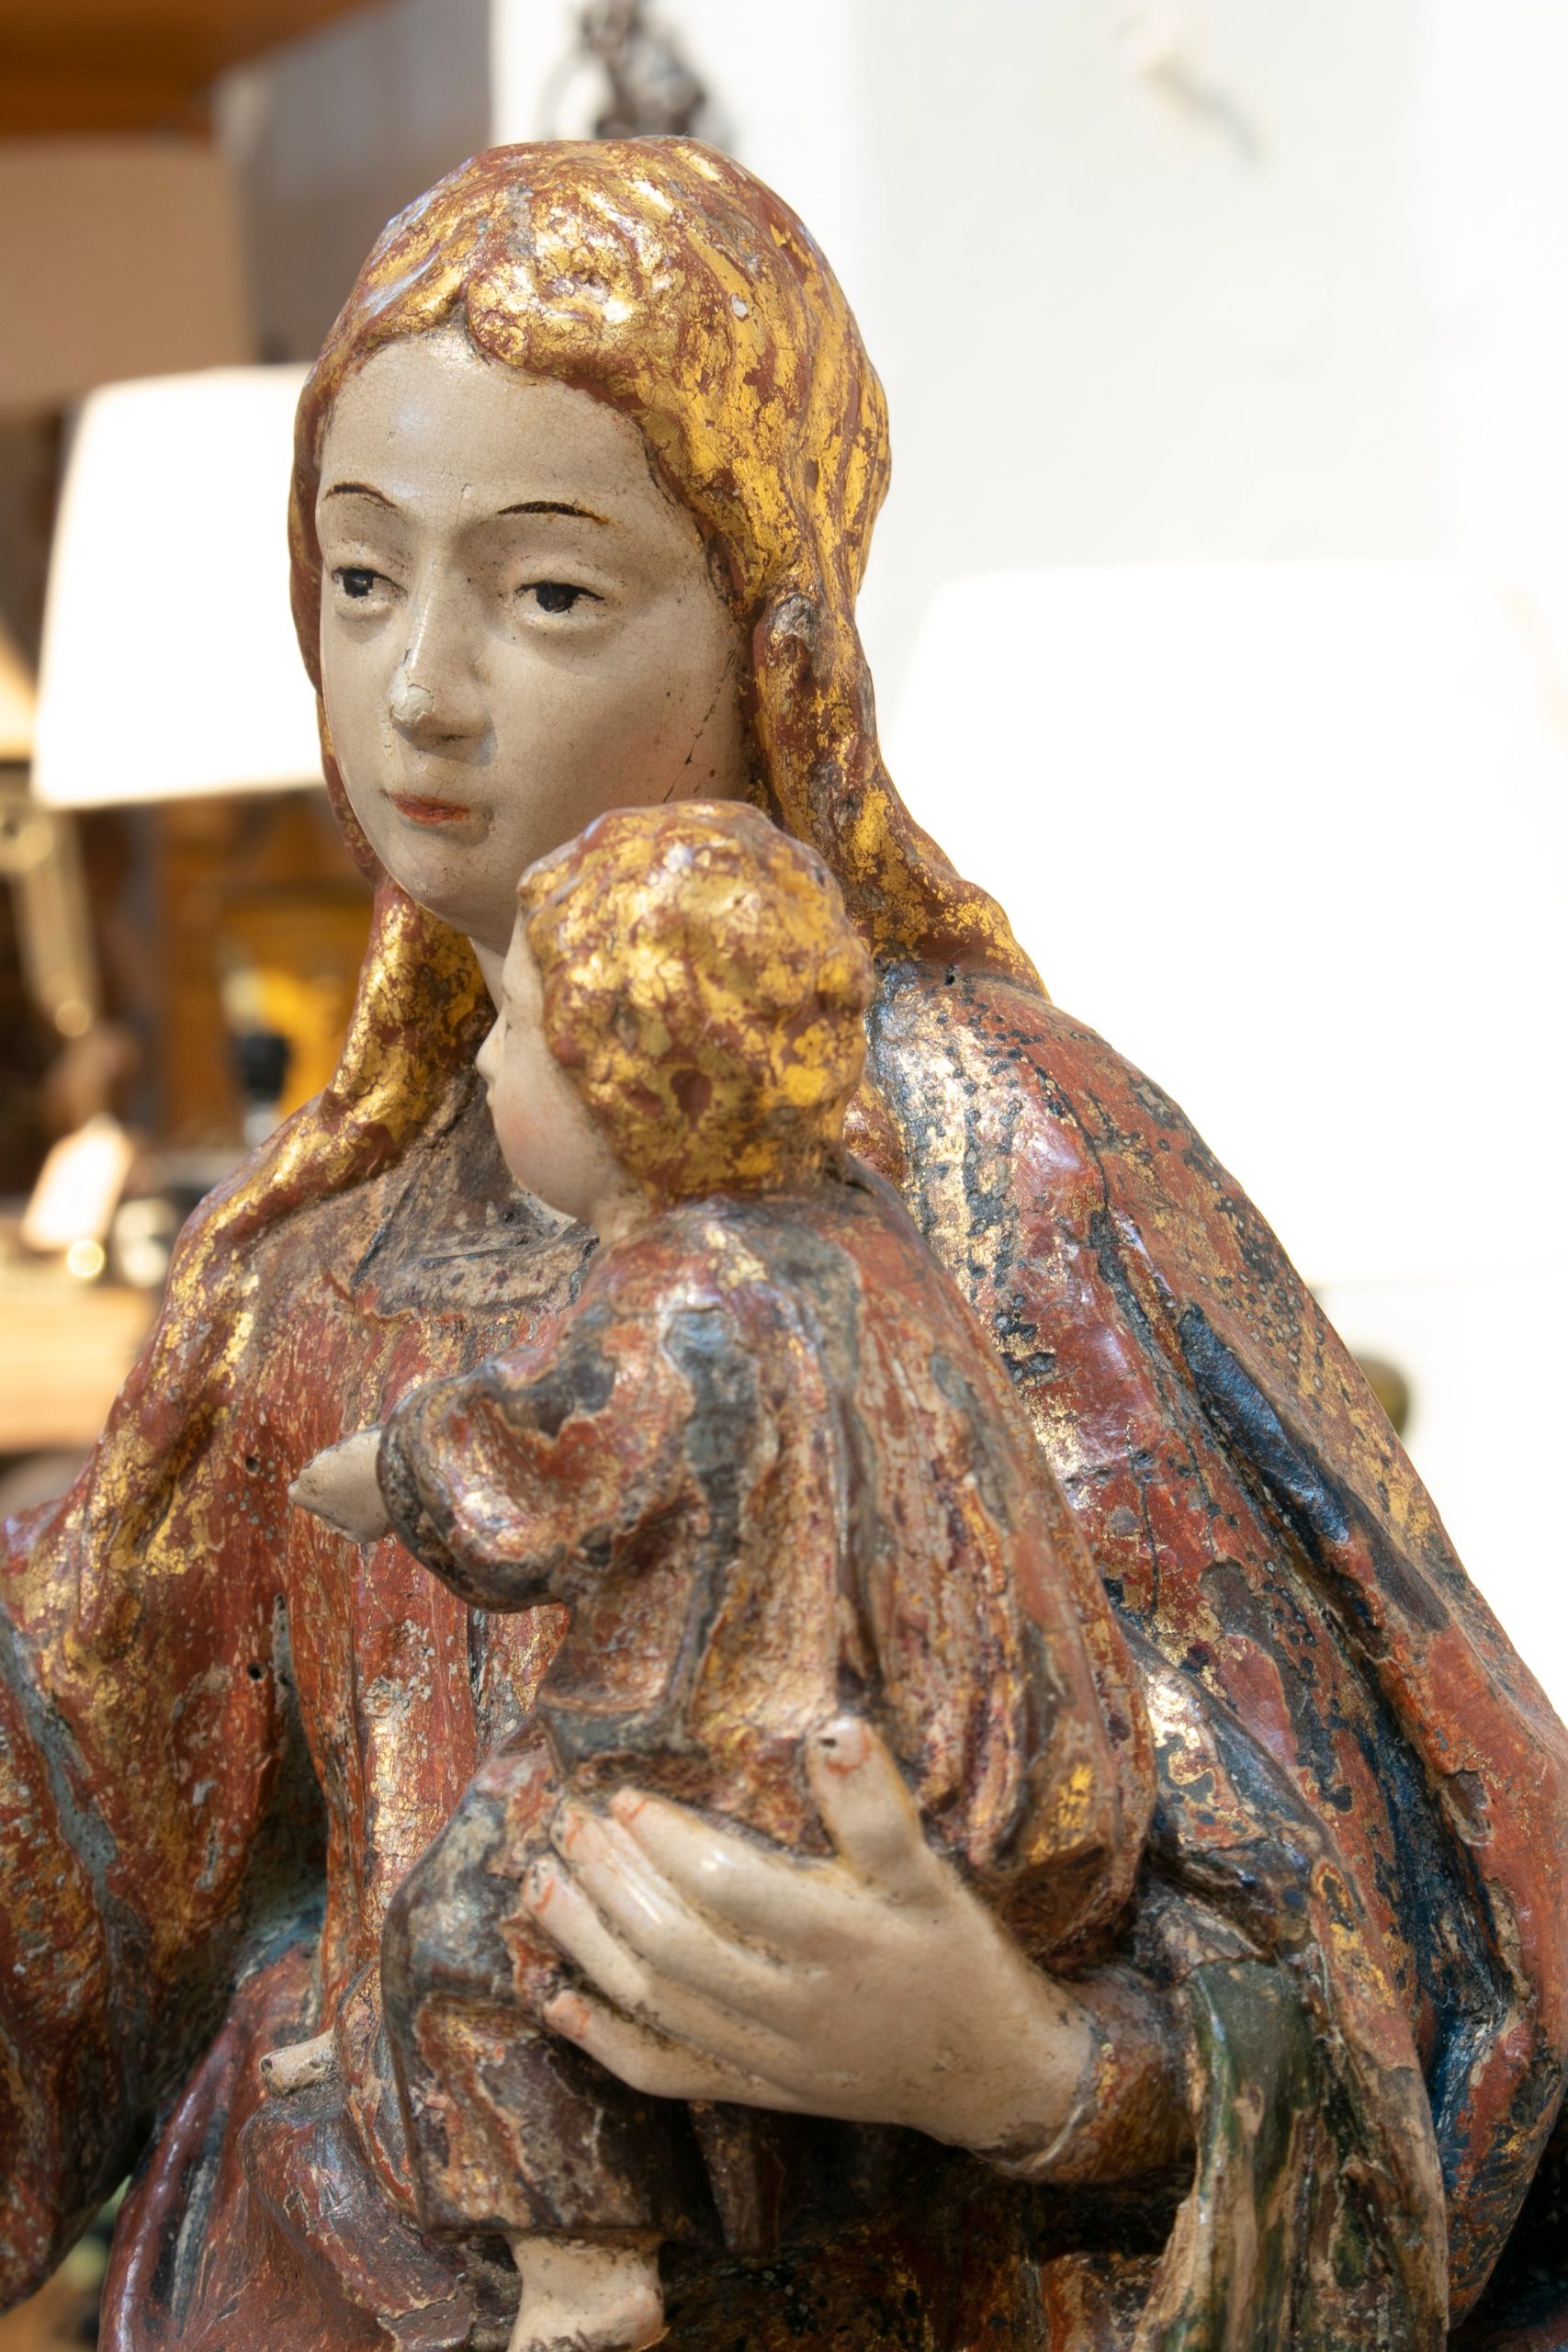 Escultura Religiosa Española de Madera Pintada de una Mujer con un Niño, España, del Siglo XVI